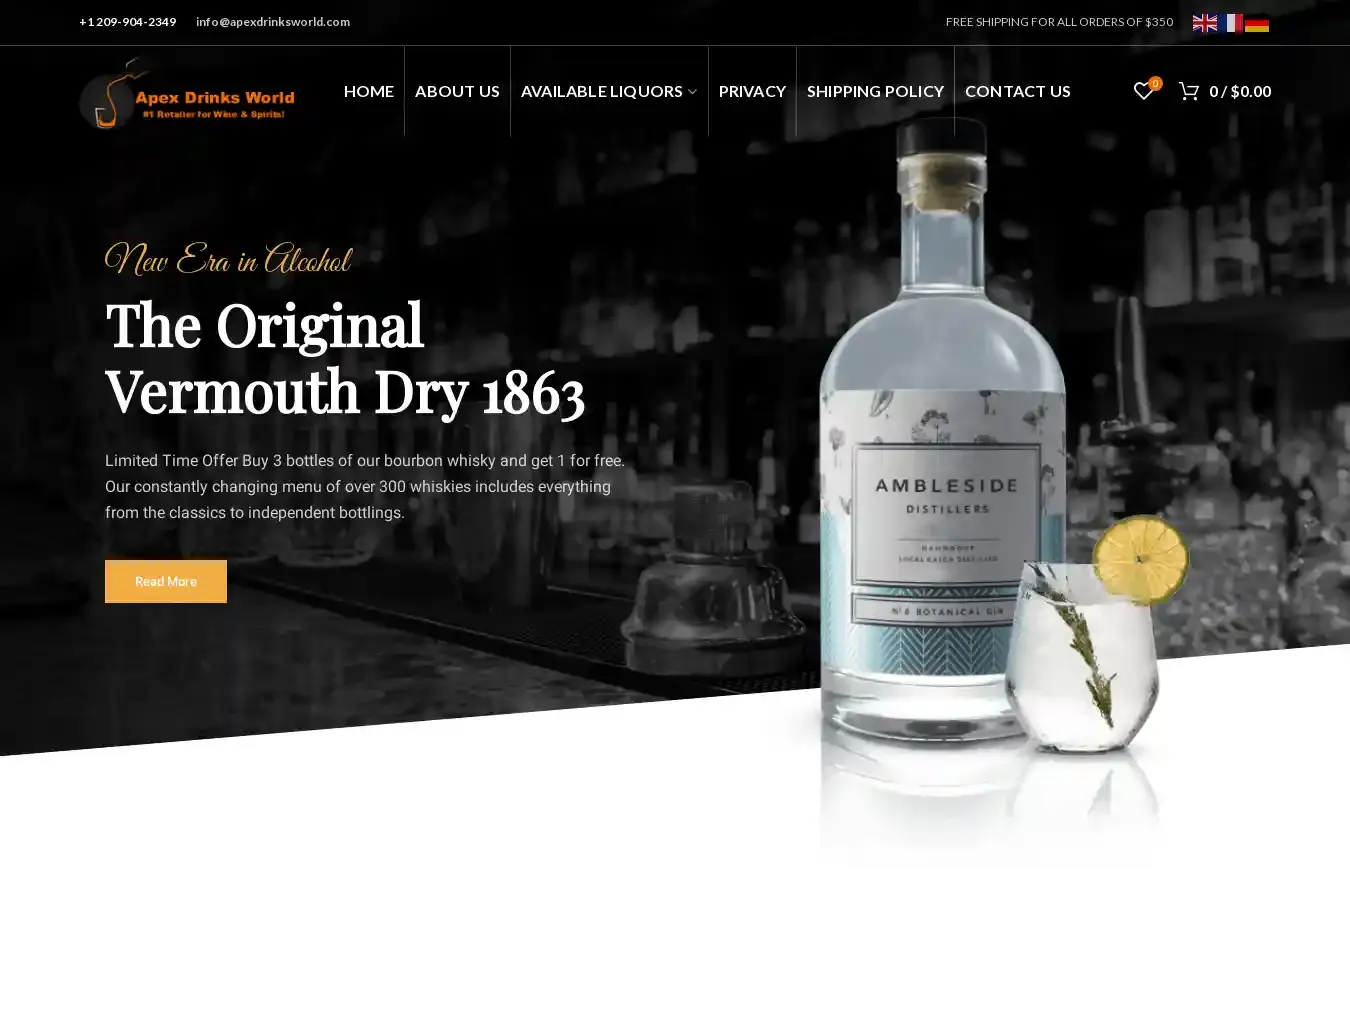 Apexdrinksworld.com Fraudulent Whisky website.